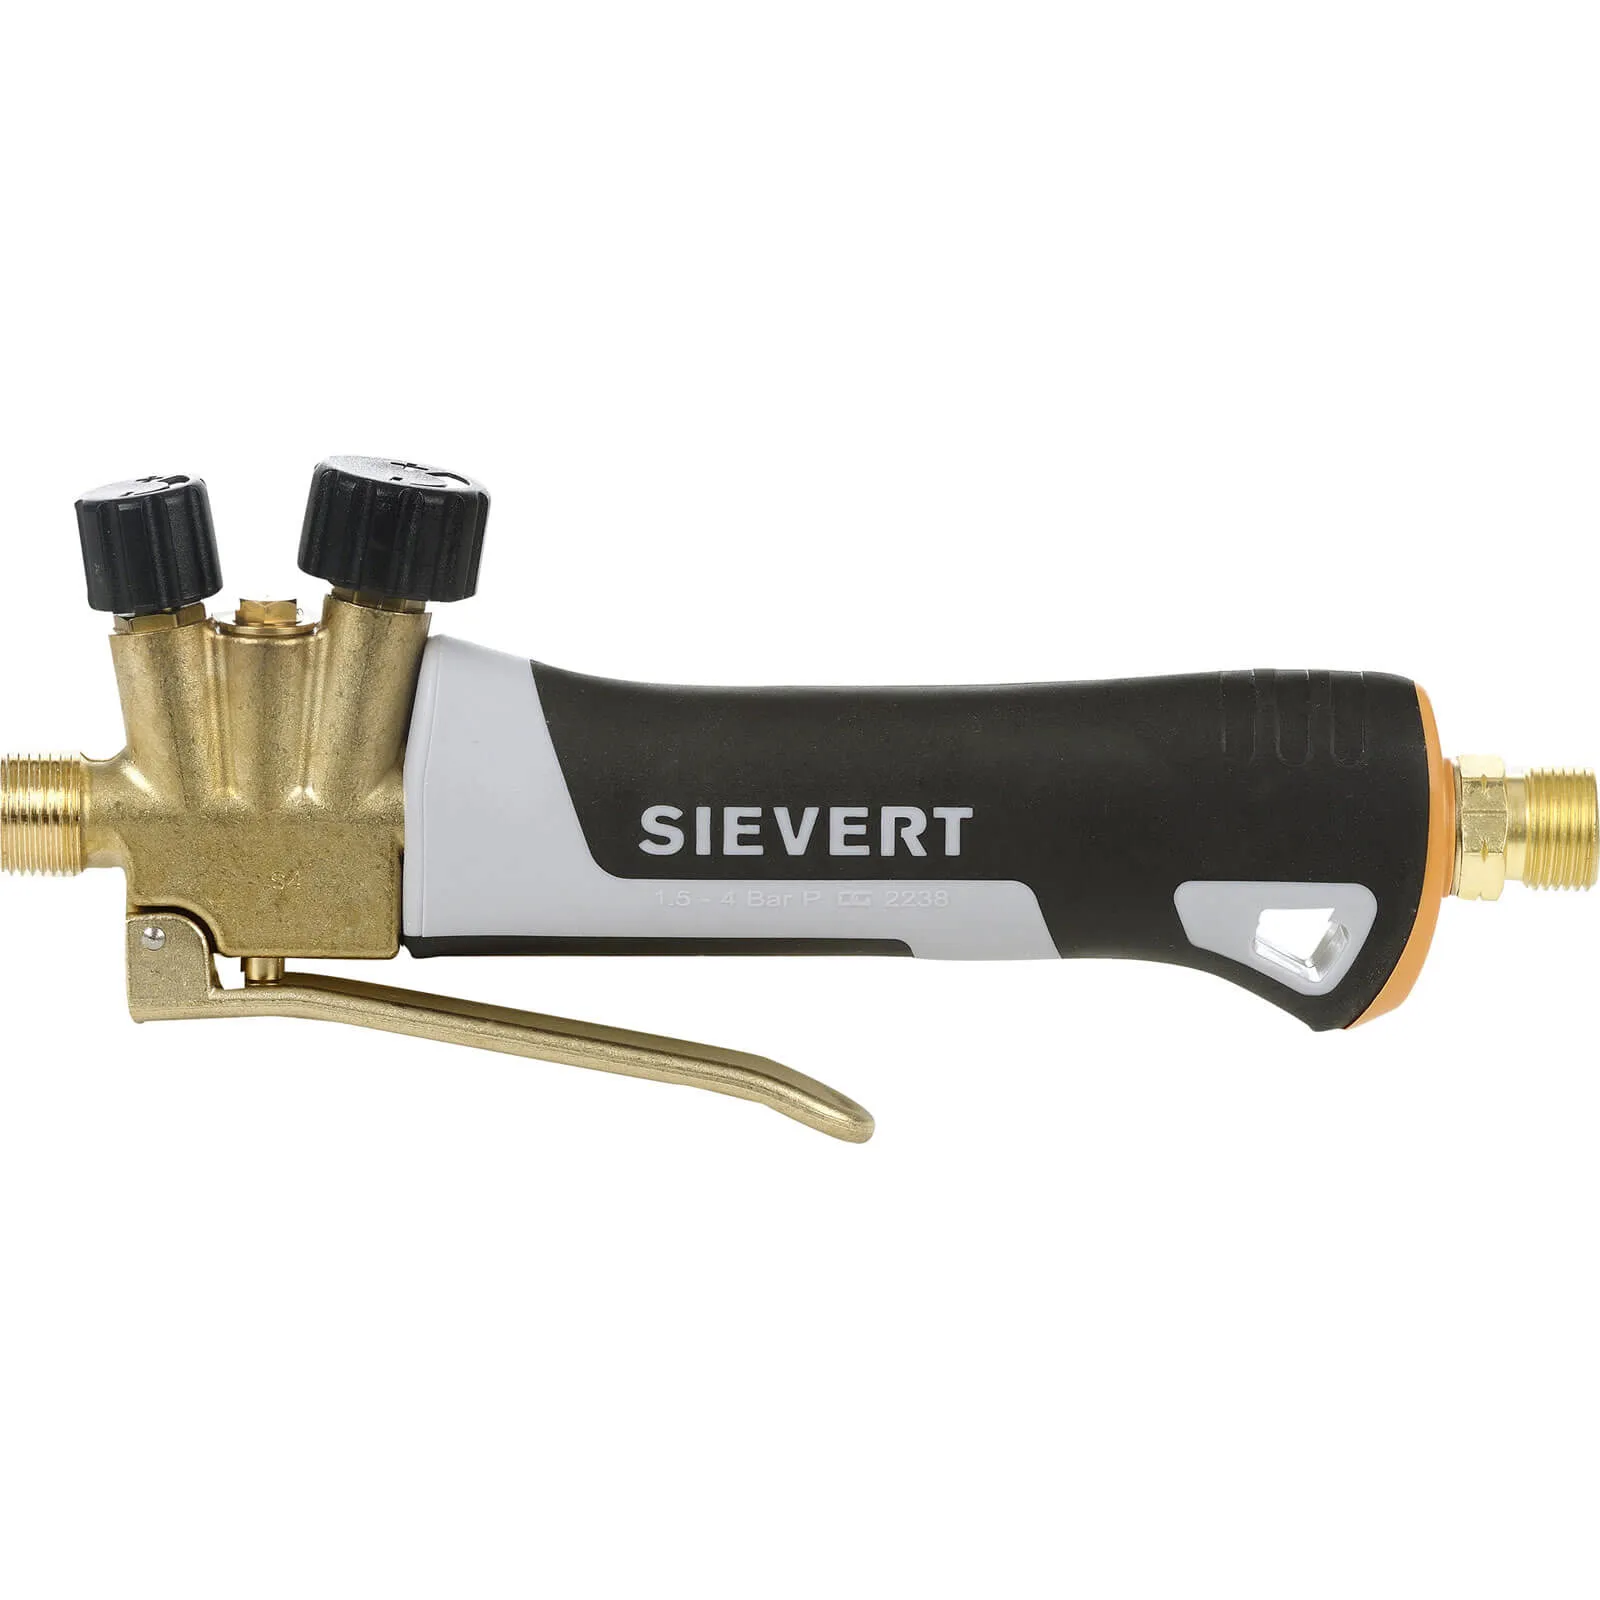 Sievert Pro 88 Torch Handle S3488